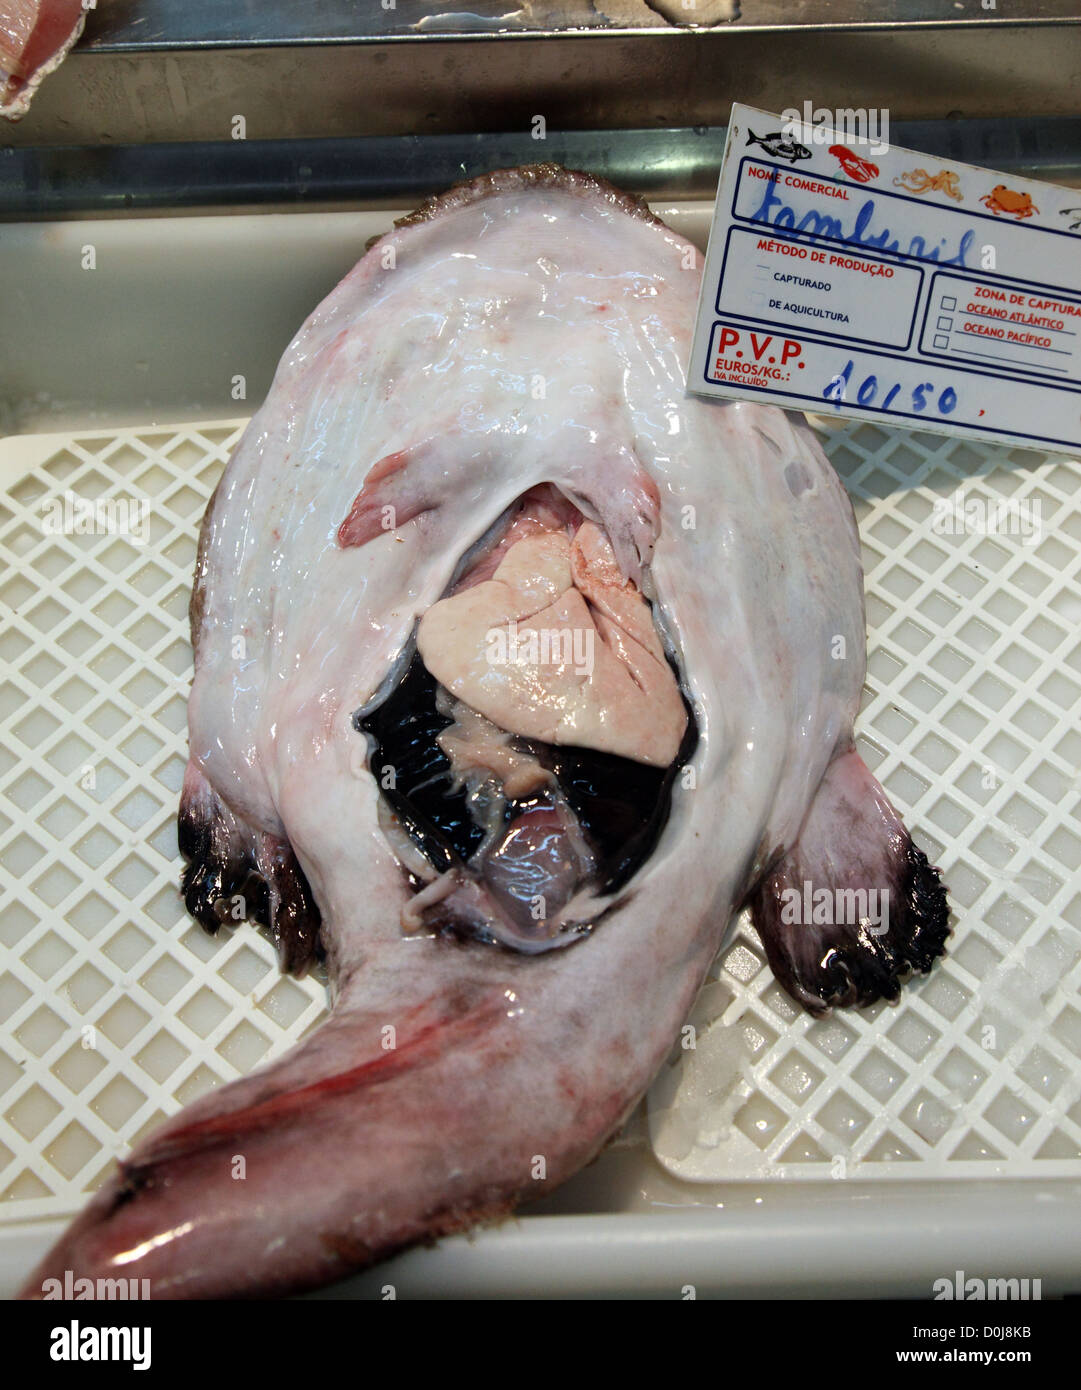 Monkfish (Tamboril) on sale in Lisbon fish market Stock Photo